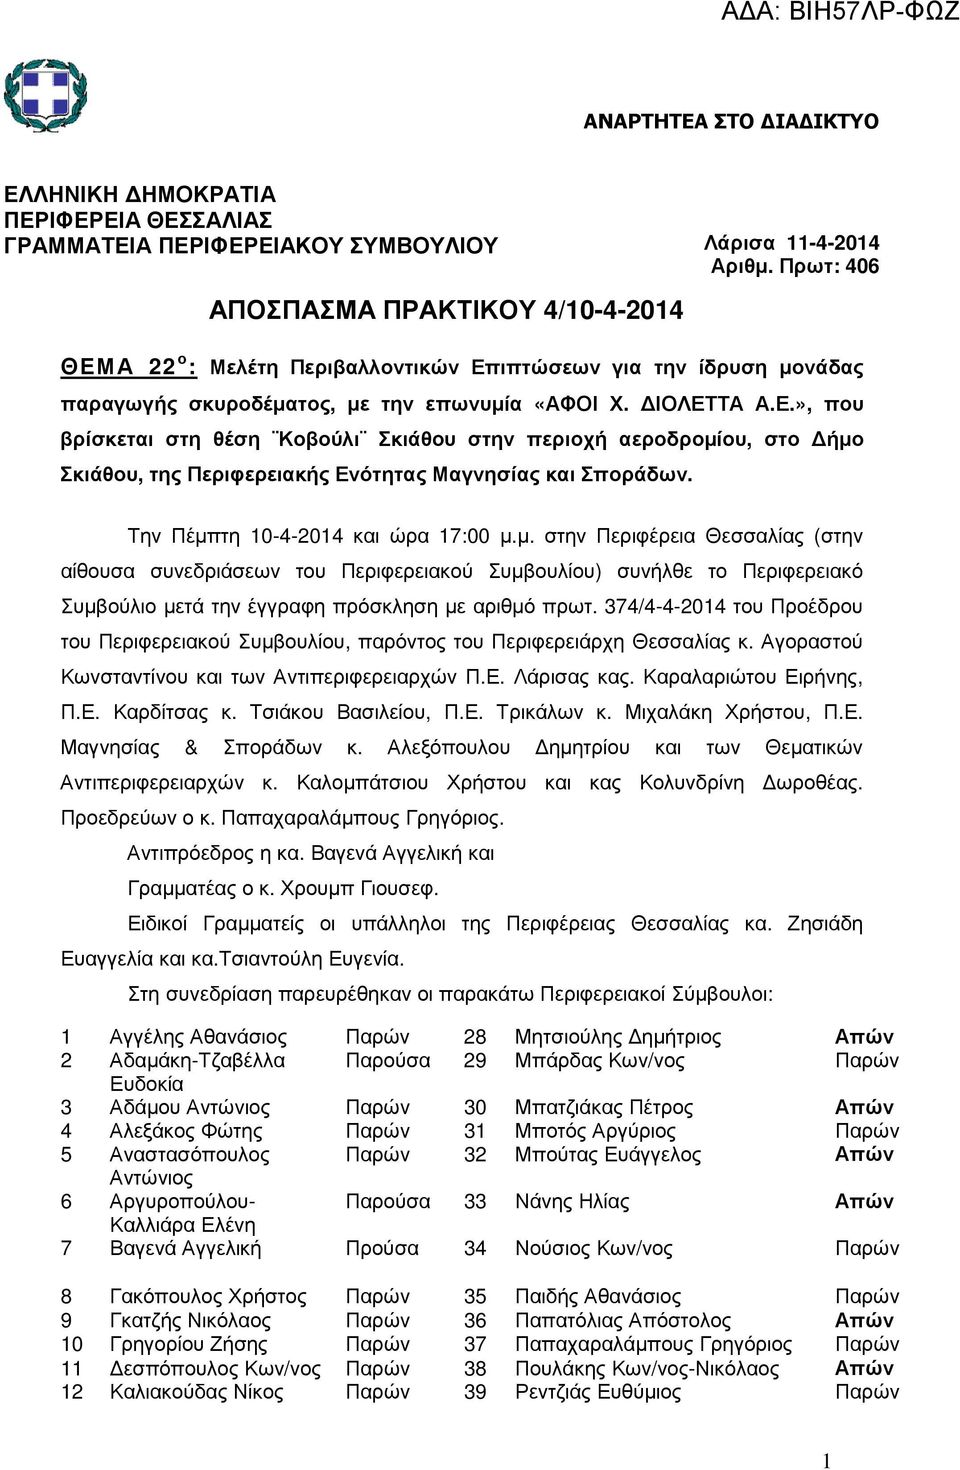 Την Πέµπτη 10-4-2014 και ώρα 17:00 µ.µ. στην Περιφέρεια Θεσσαλίας (στην αίθουσα συνεδριάσεων του Περιφερειακού Συµβουλίου) συνήλθε το Περιφερειακό Συµβούλιο µετά την έγγραφη πρόσκληση µε αριθµό πρωτ.